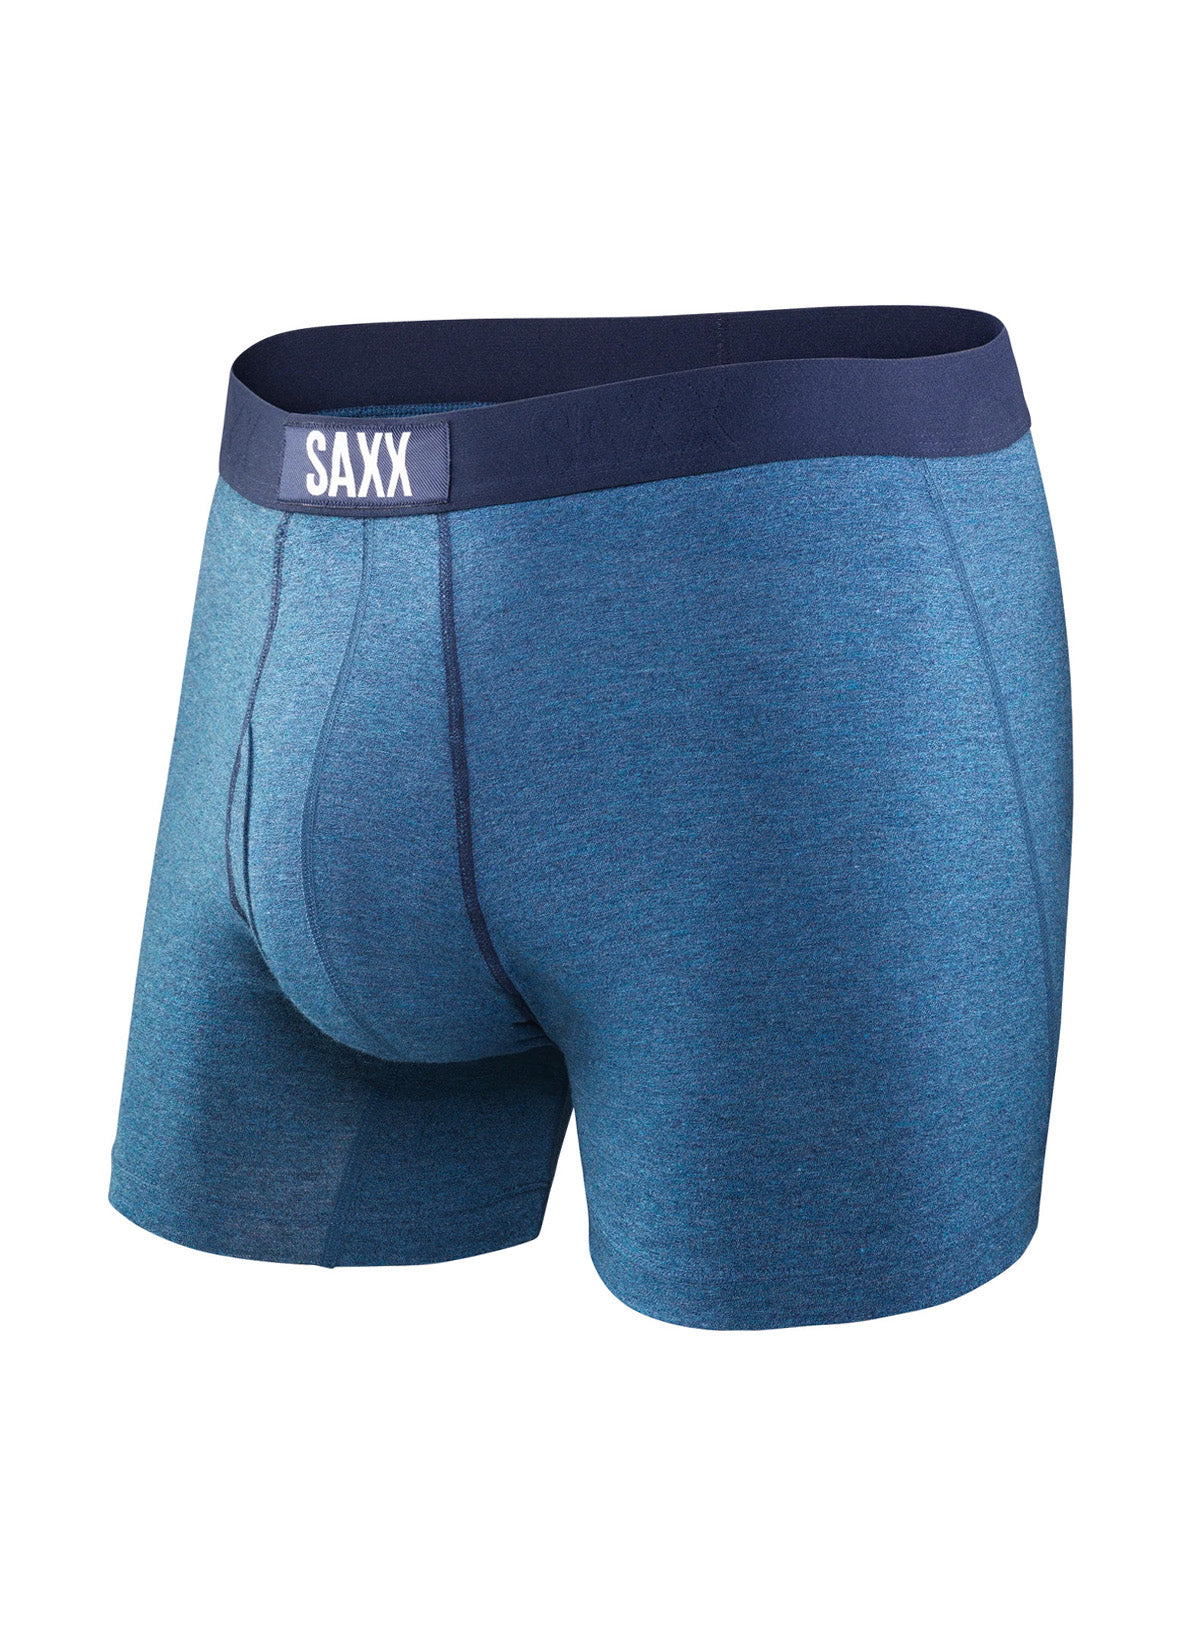 Indigo Heathered Boxer Underwear for men - Saxx